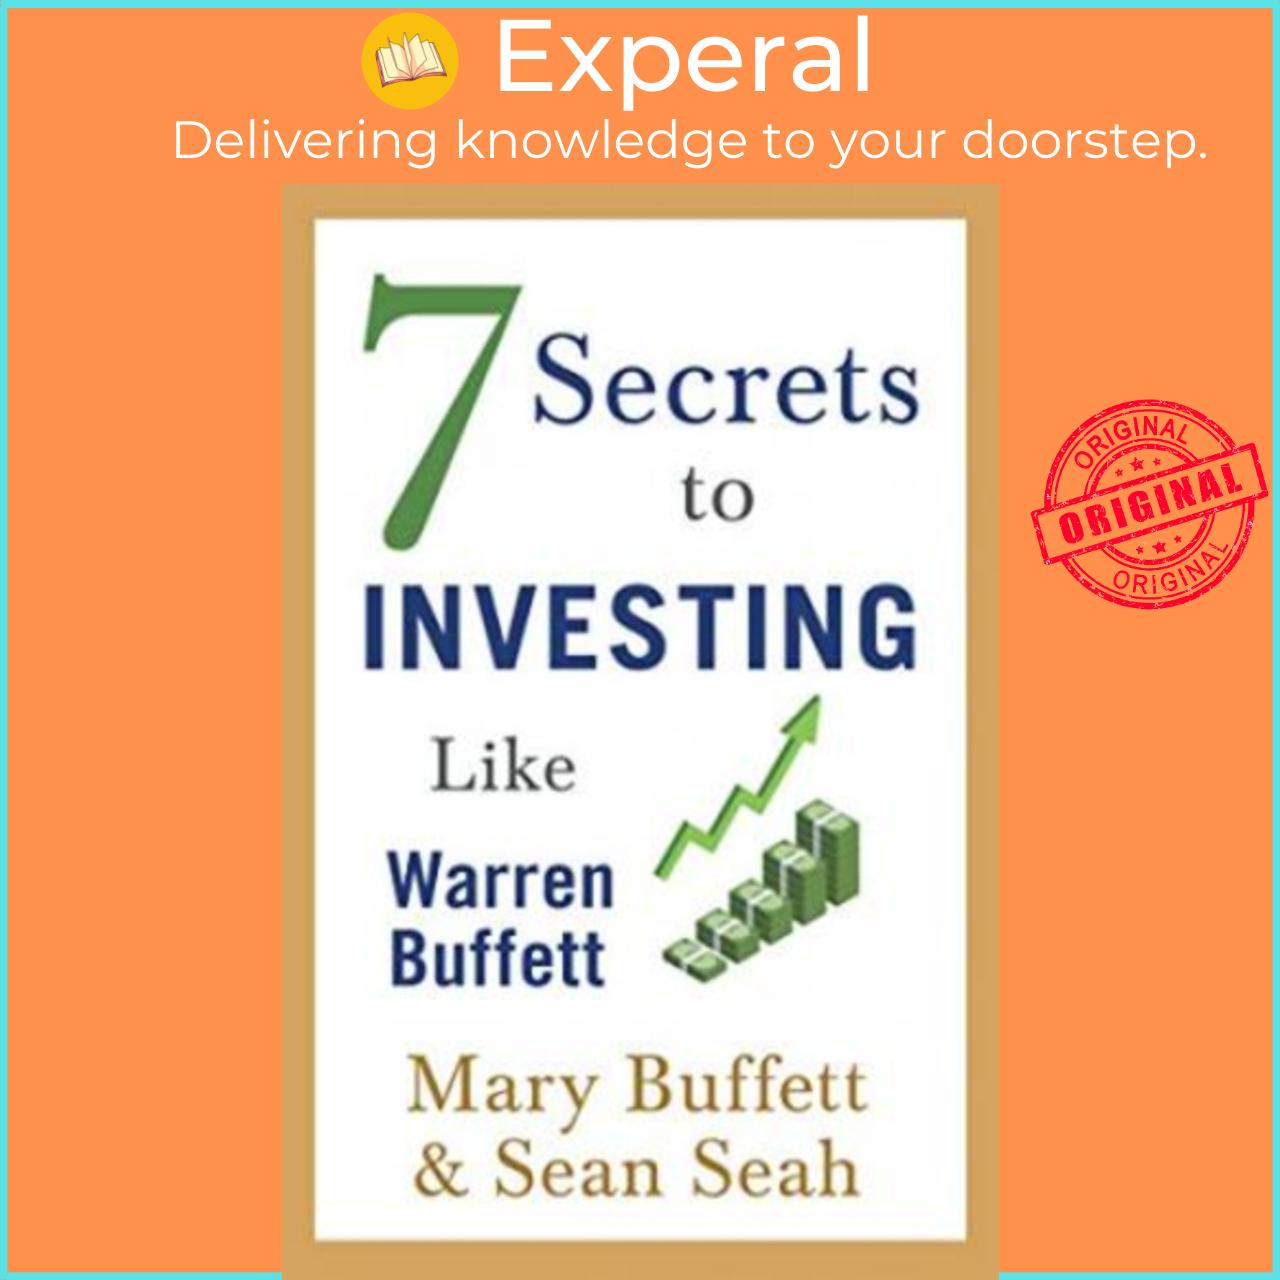 Sách - 7 Secrets to Investing Like Warren Buffett by Mary Buffett Sean Seah (UK edition, paperback)